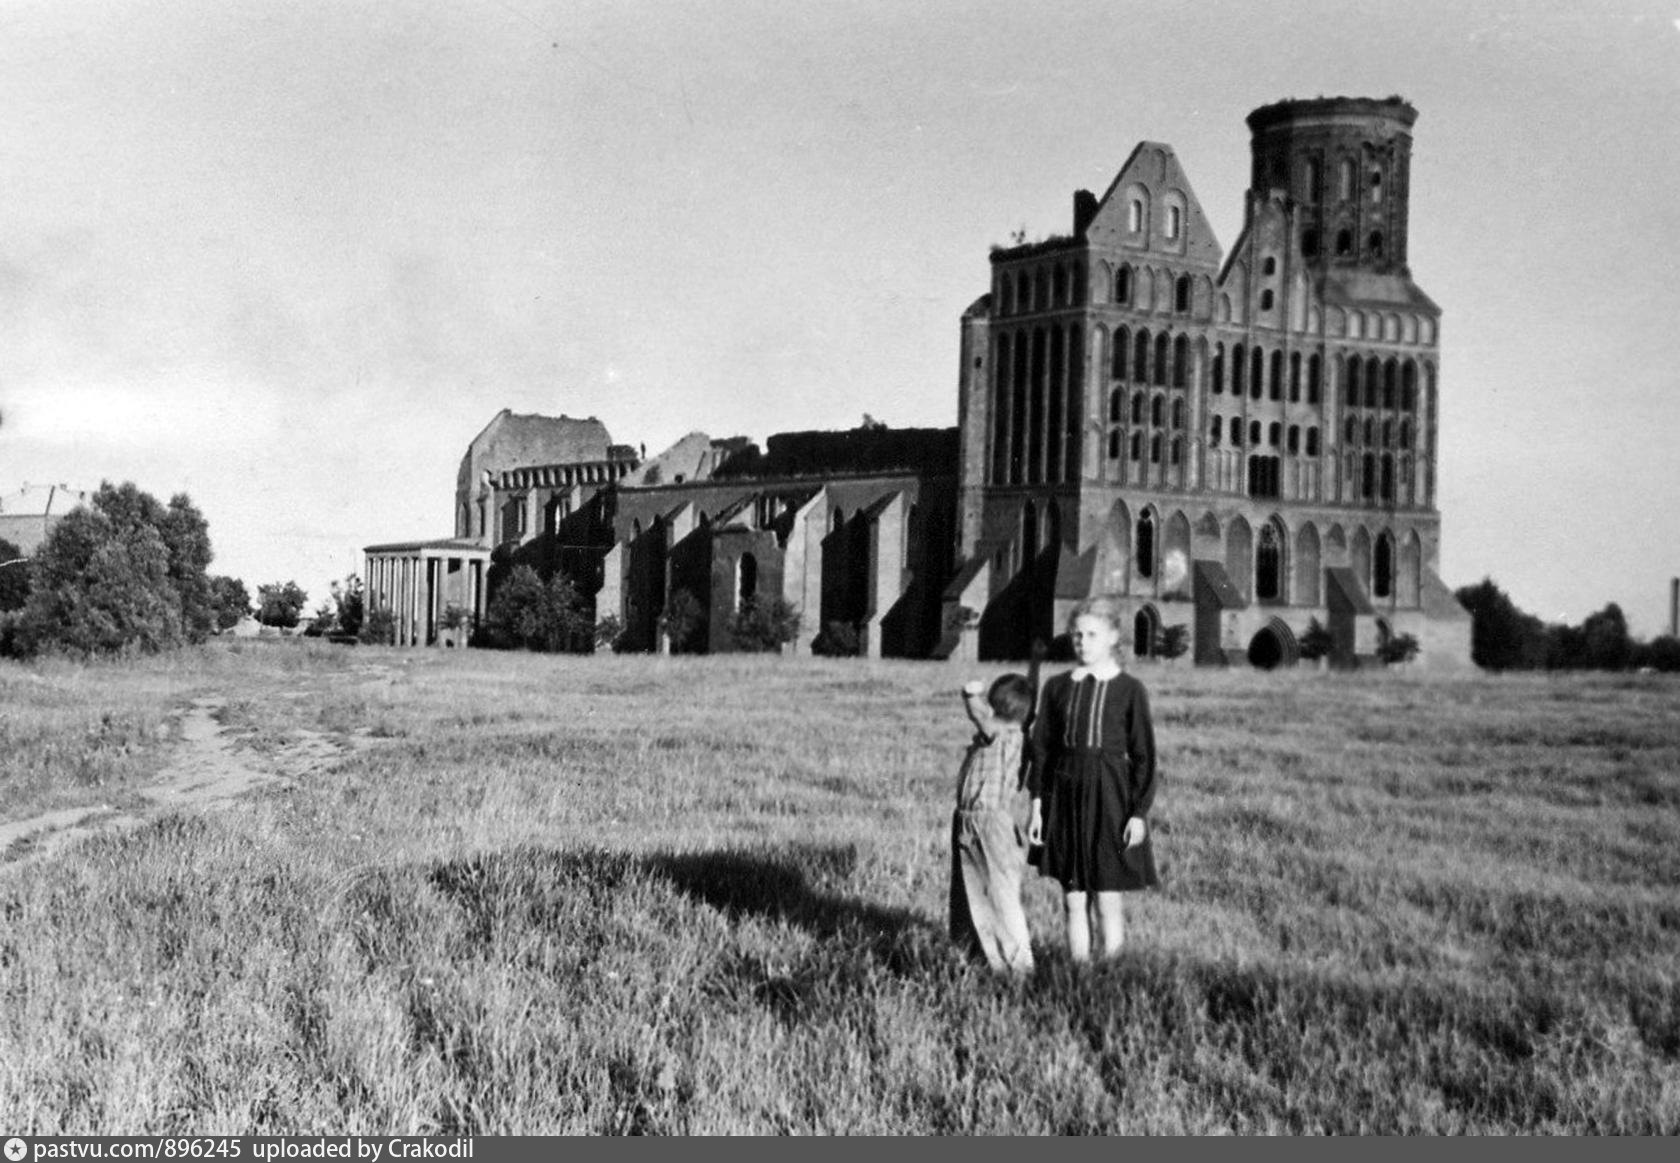 кафедральный собор калининград после войны